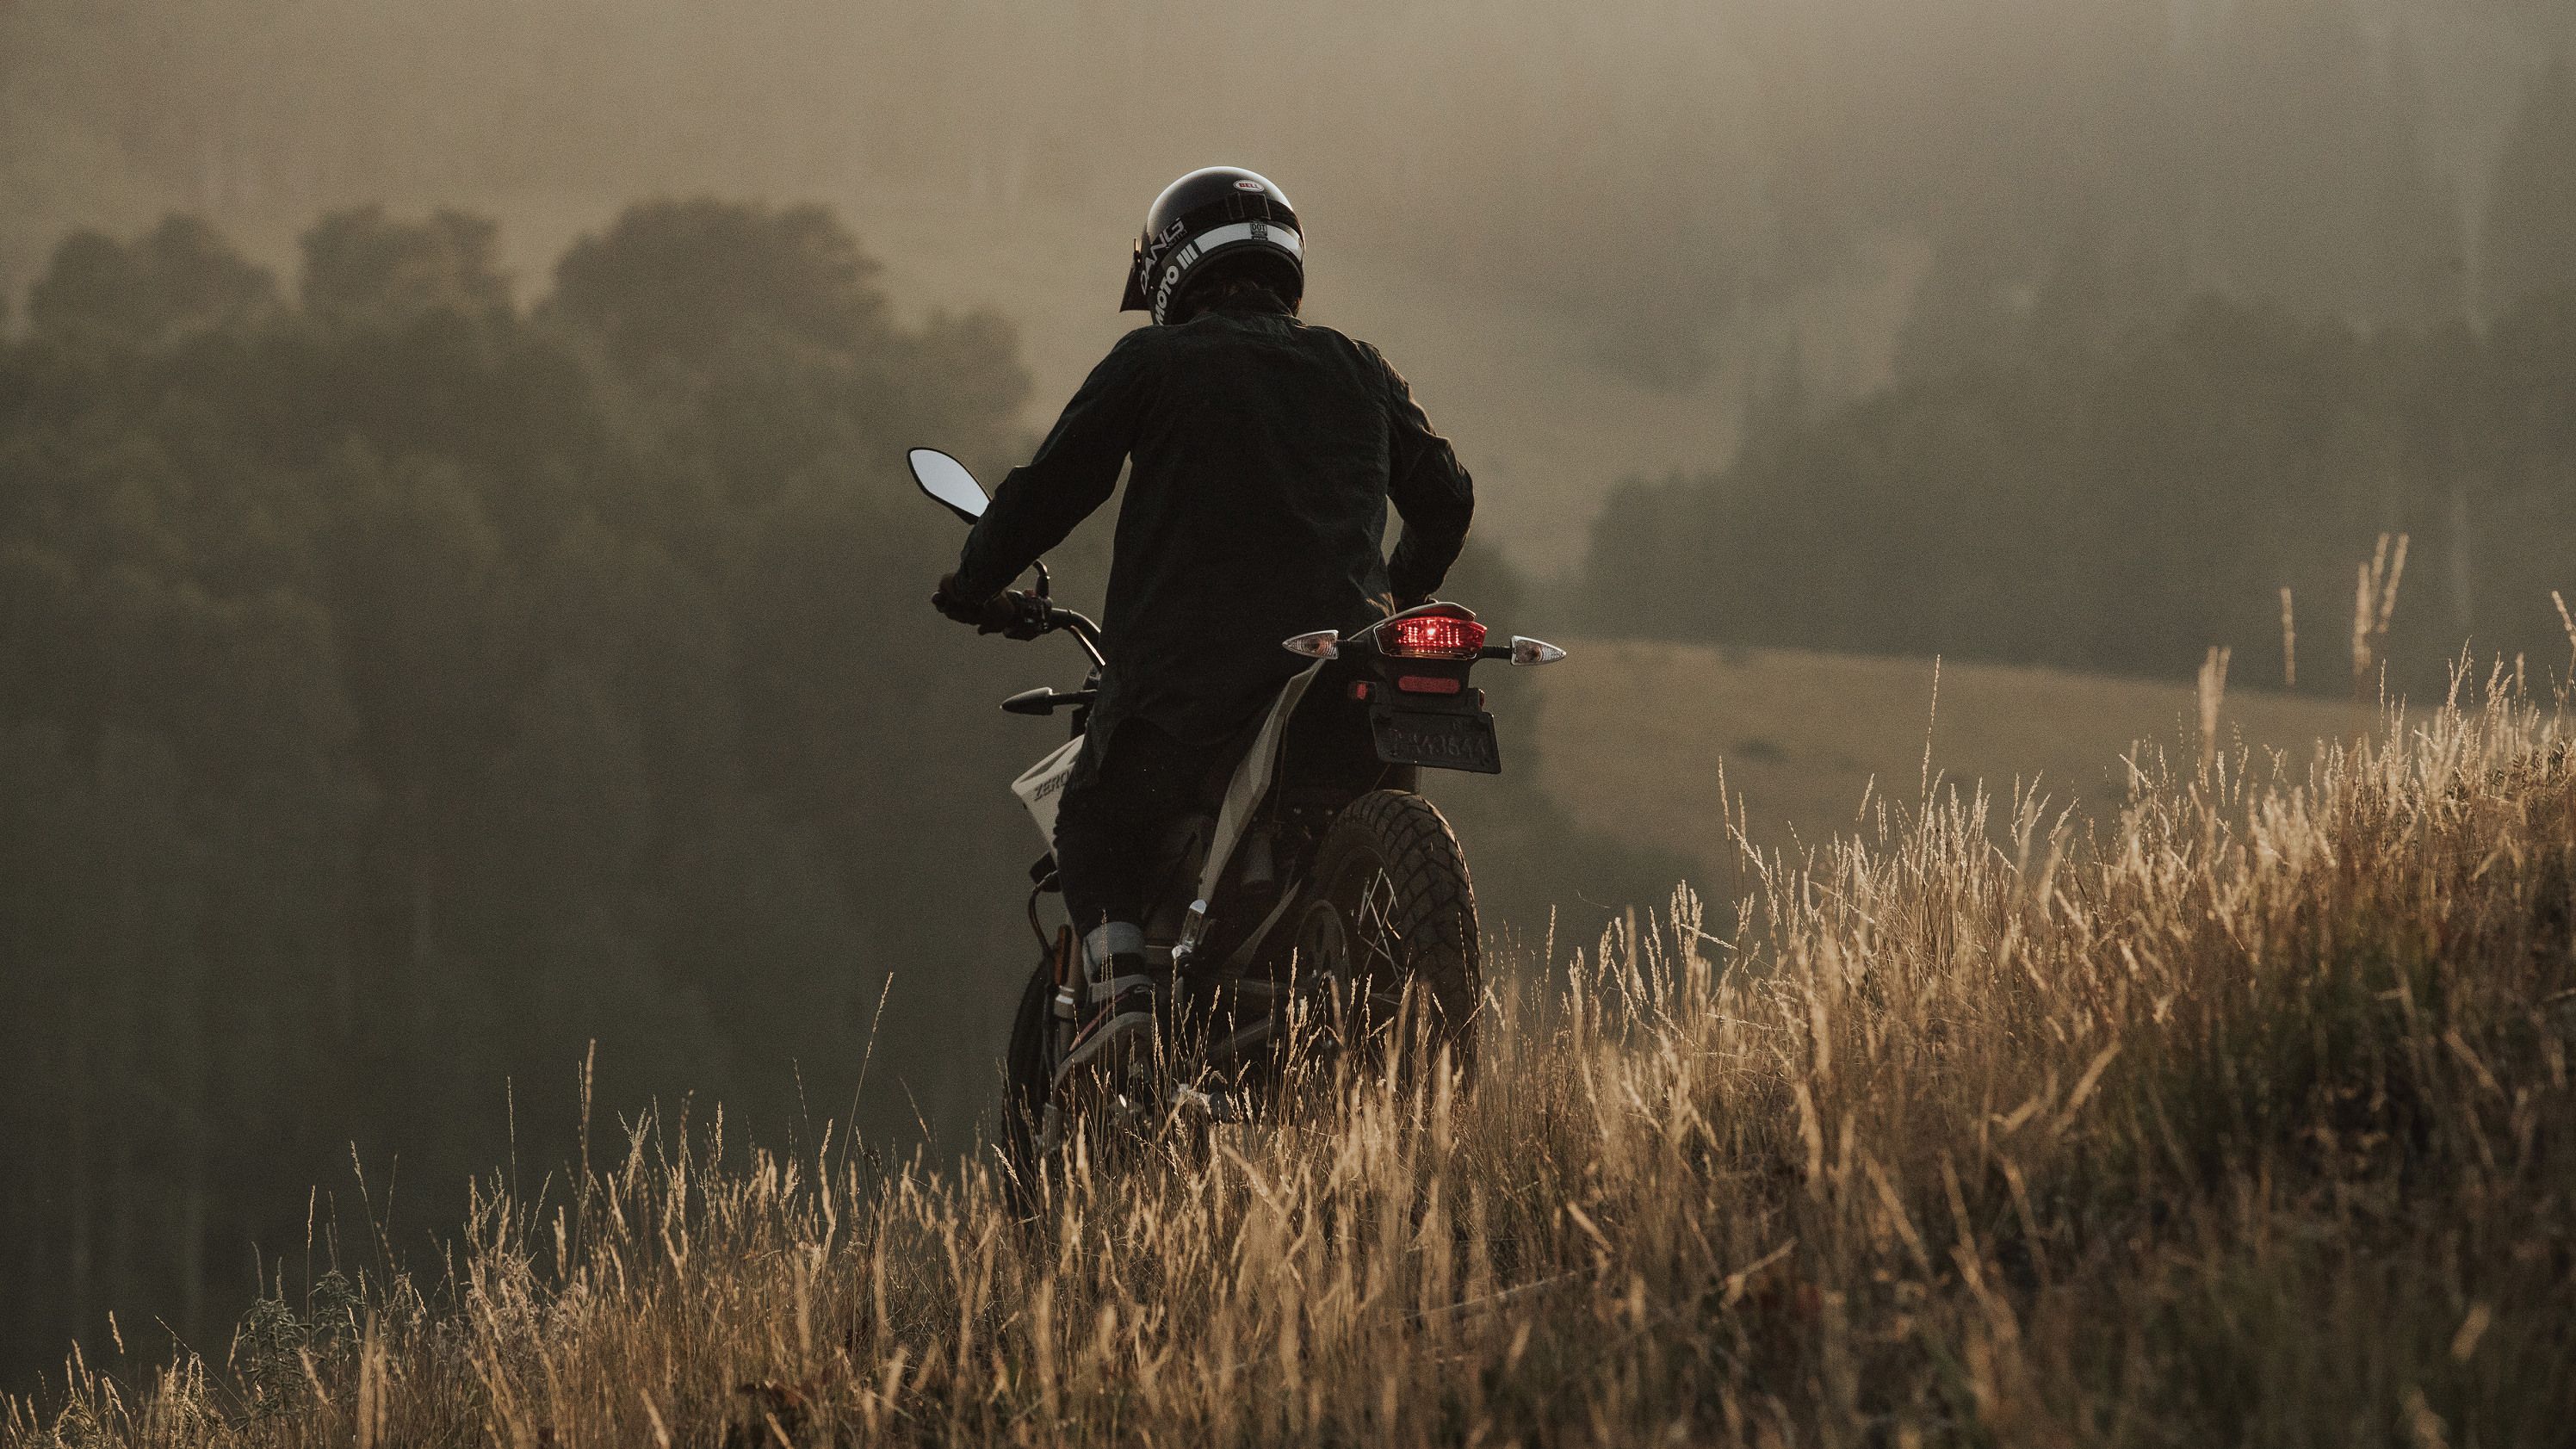 2019 Zero Motorcycles FX